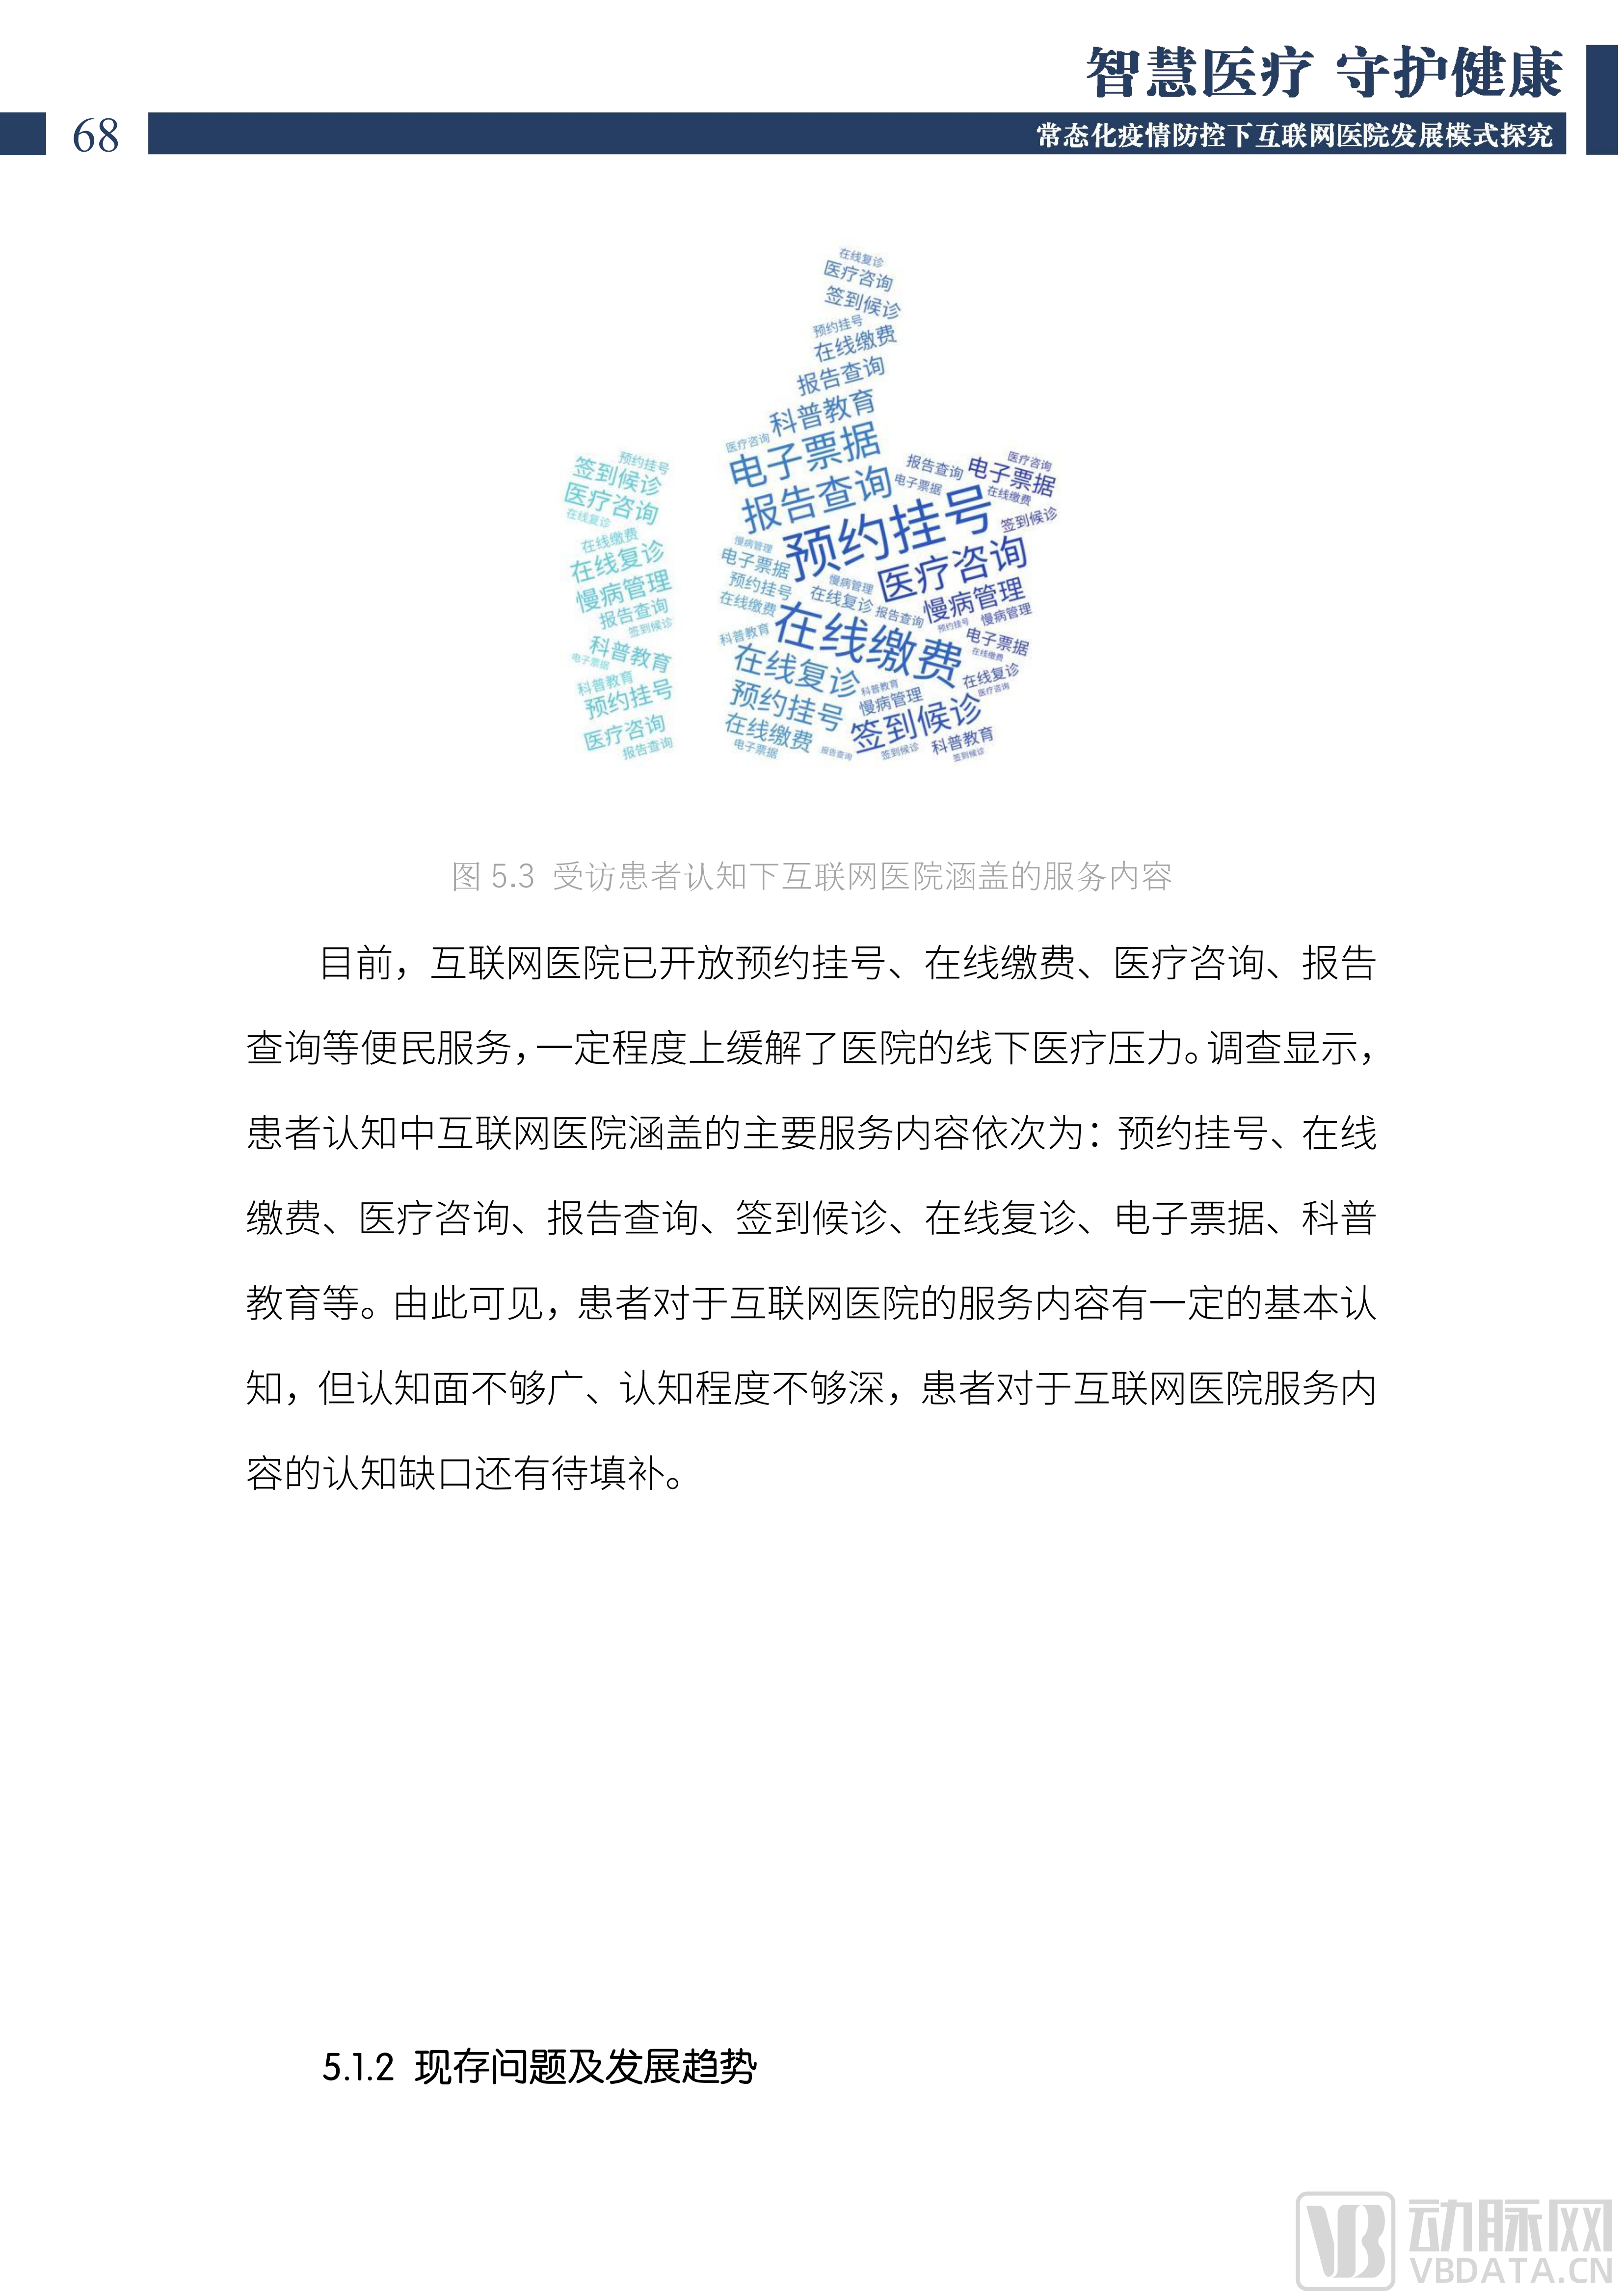 2022中国互联网医院发展调研报告(1)_69.png